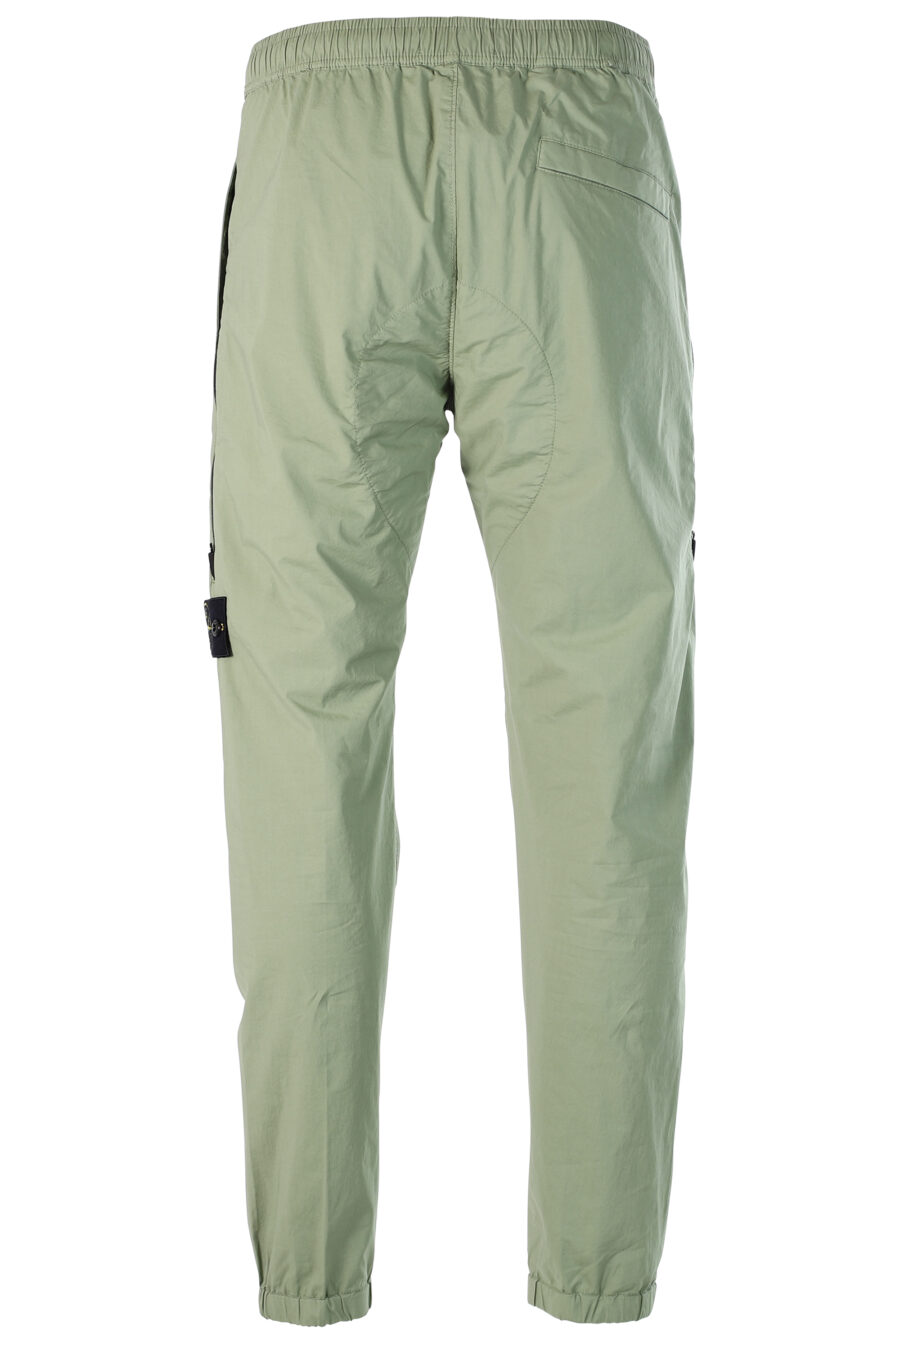 Pantalon cargo vert militaire avec patch - 8052572549175 3